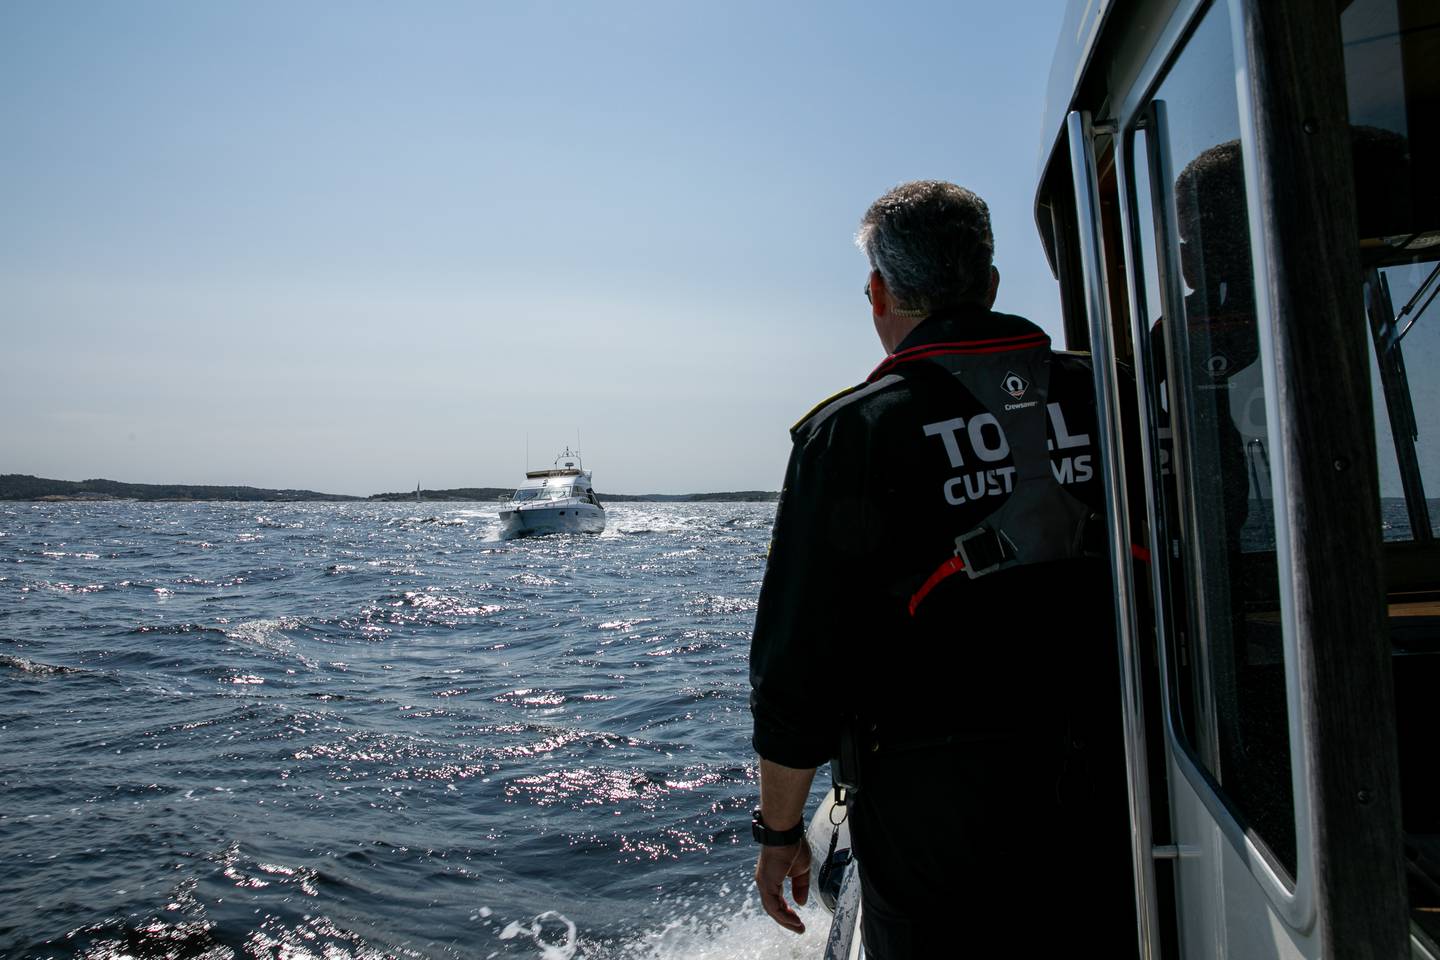 Førstetollinspektør Per Magne Solberg speider etter båter å kontrollere.